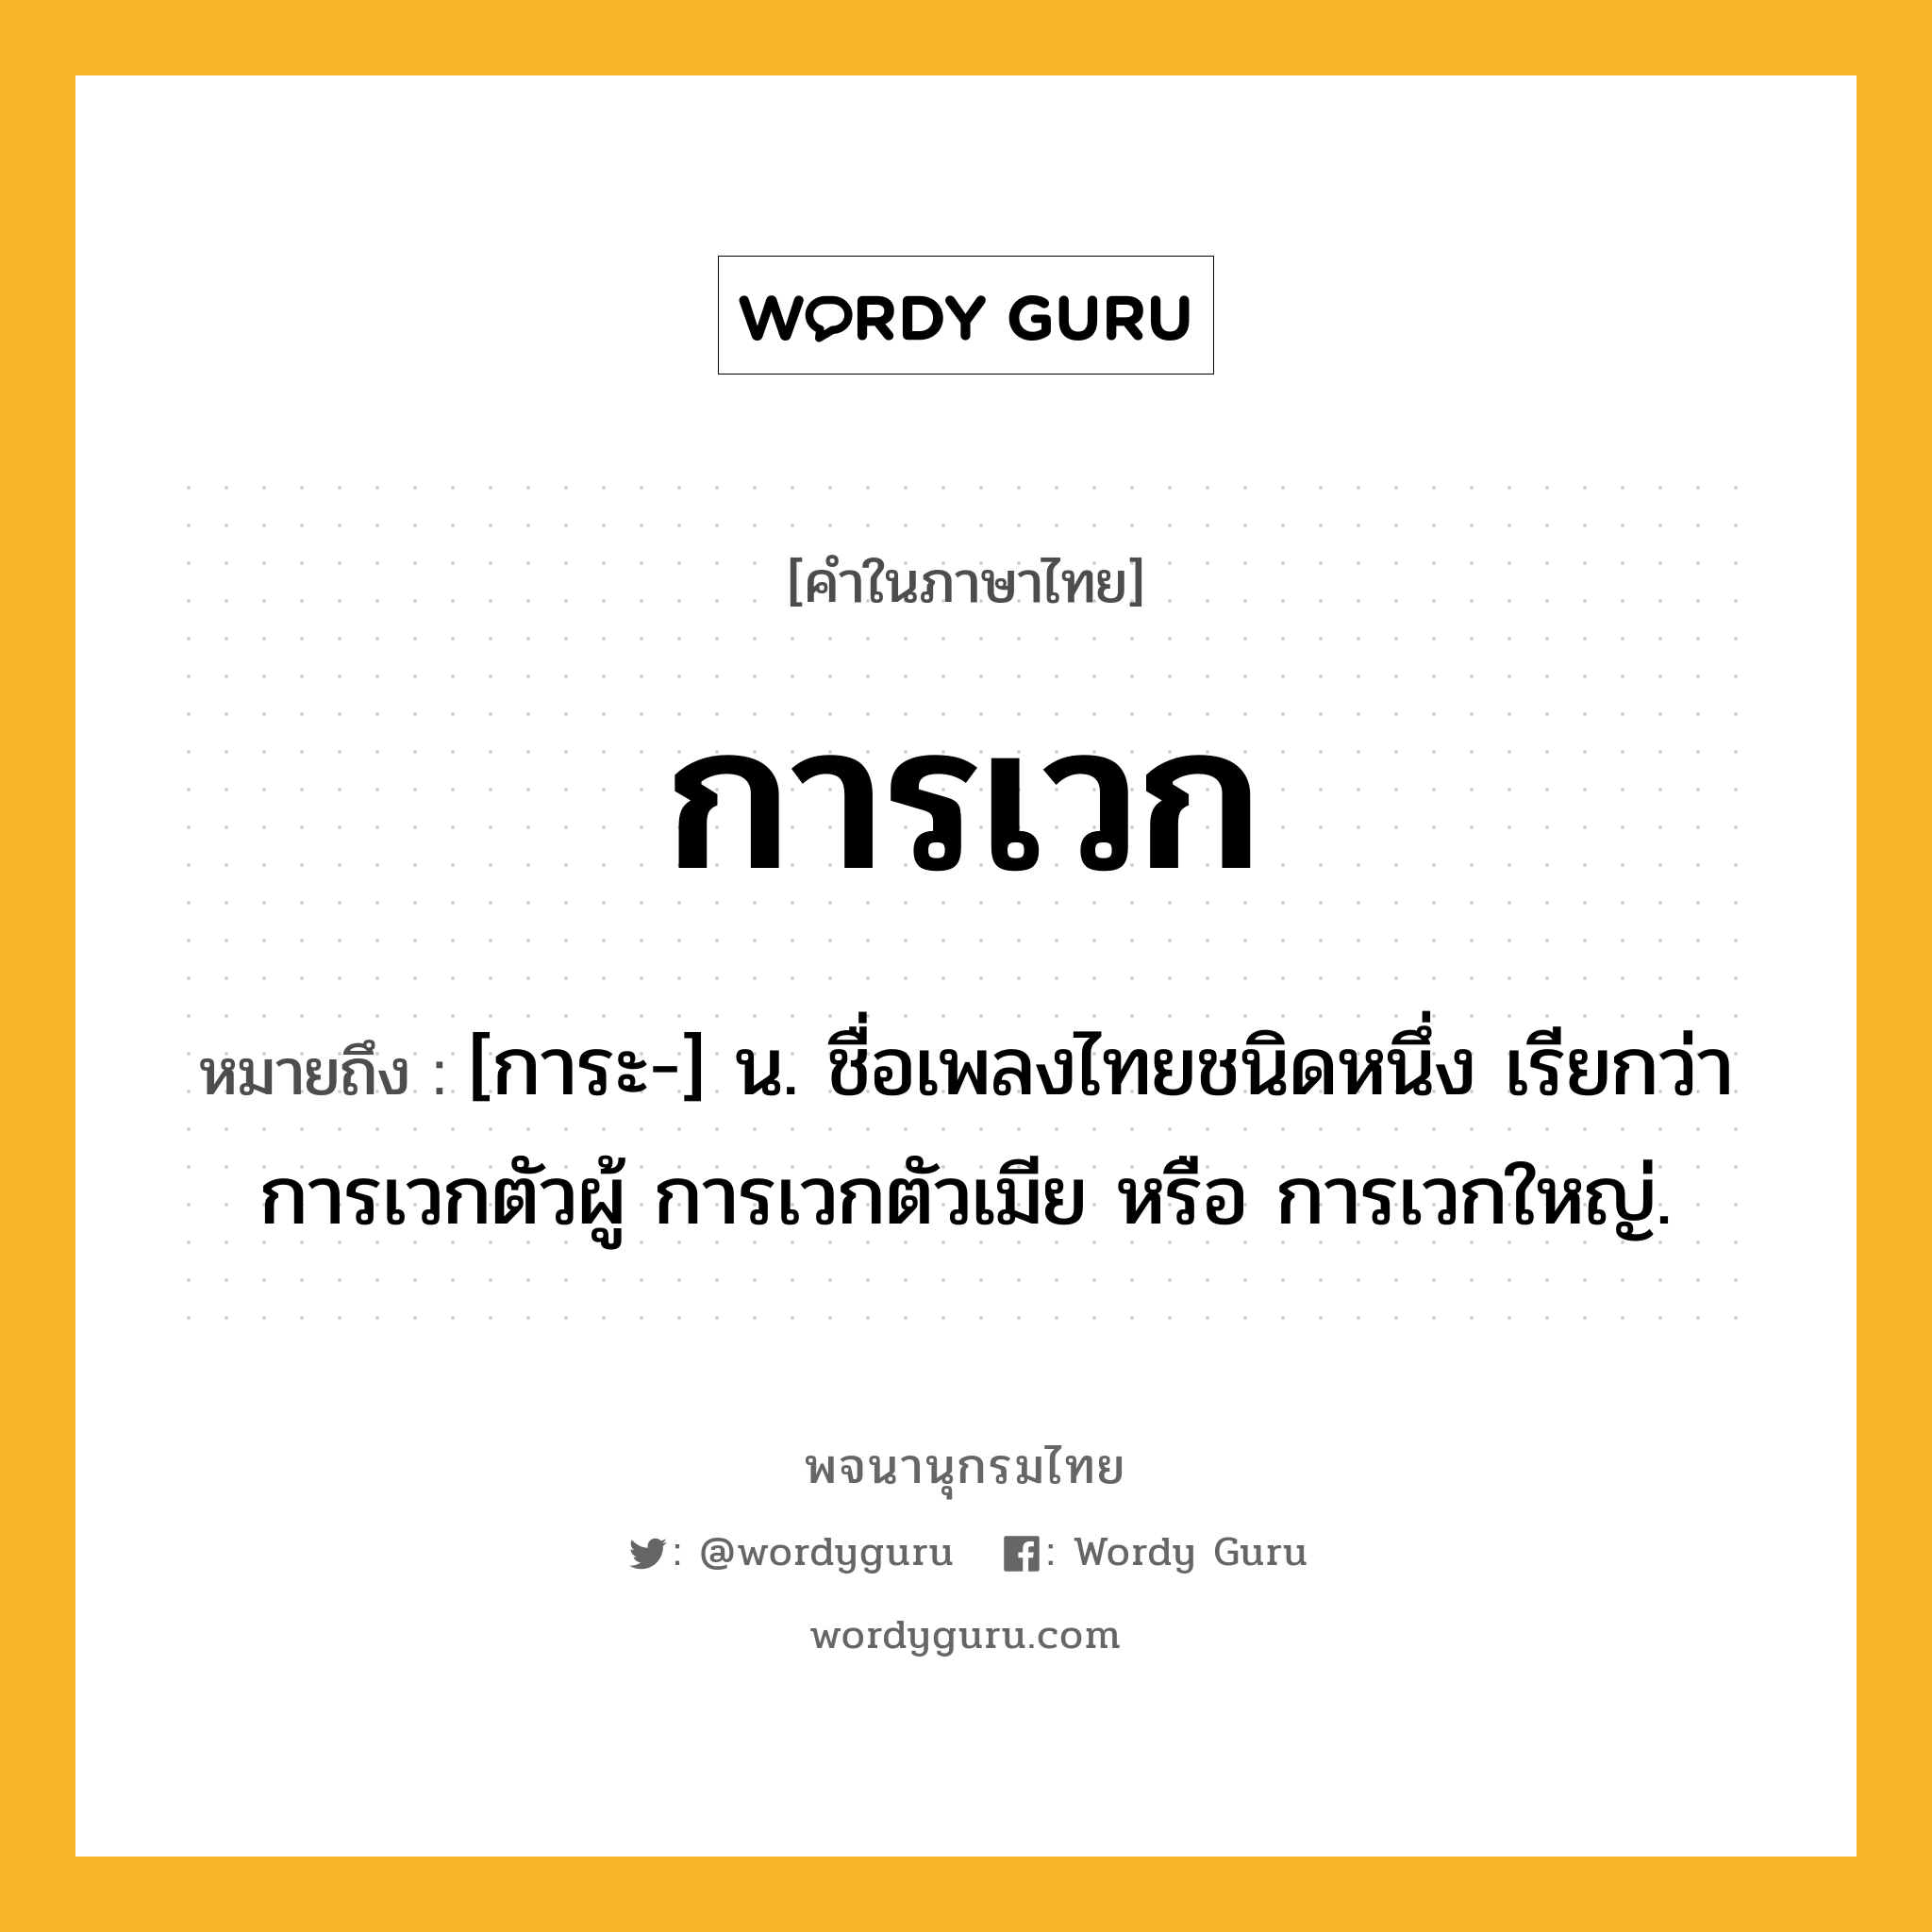 การเวก หมายถึงอะไร?, คำในภาษาไทย การเวก หมายถึง [การะ-] น. ชื่อเพลงไทยชนิดหนึ่ง เรียกว่า การเวกตัวผู้ การเวกตัวเมีย หรือ การเวกใหญ่.